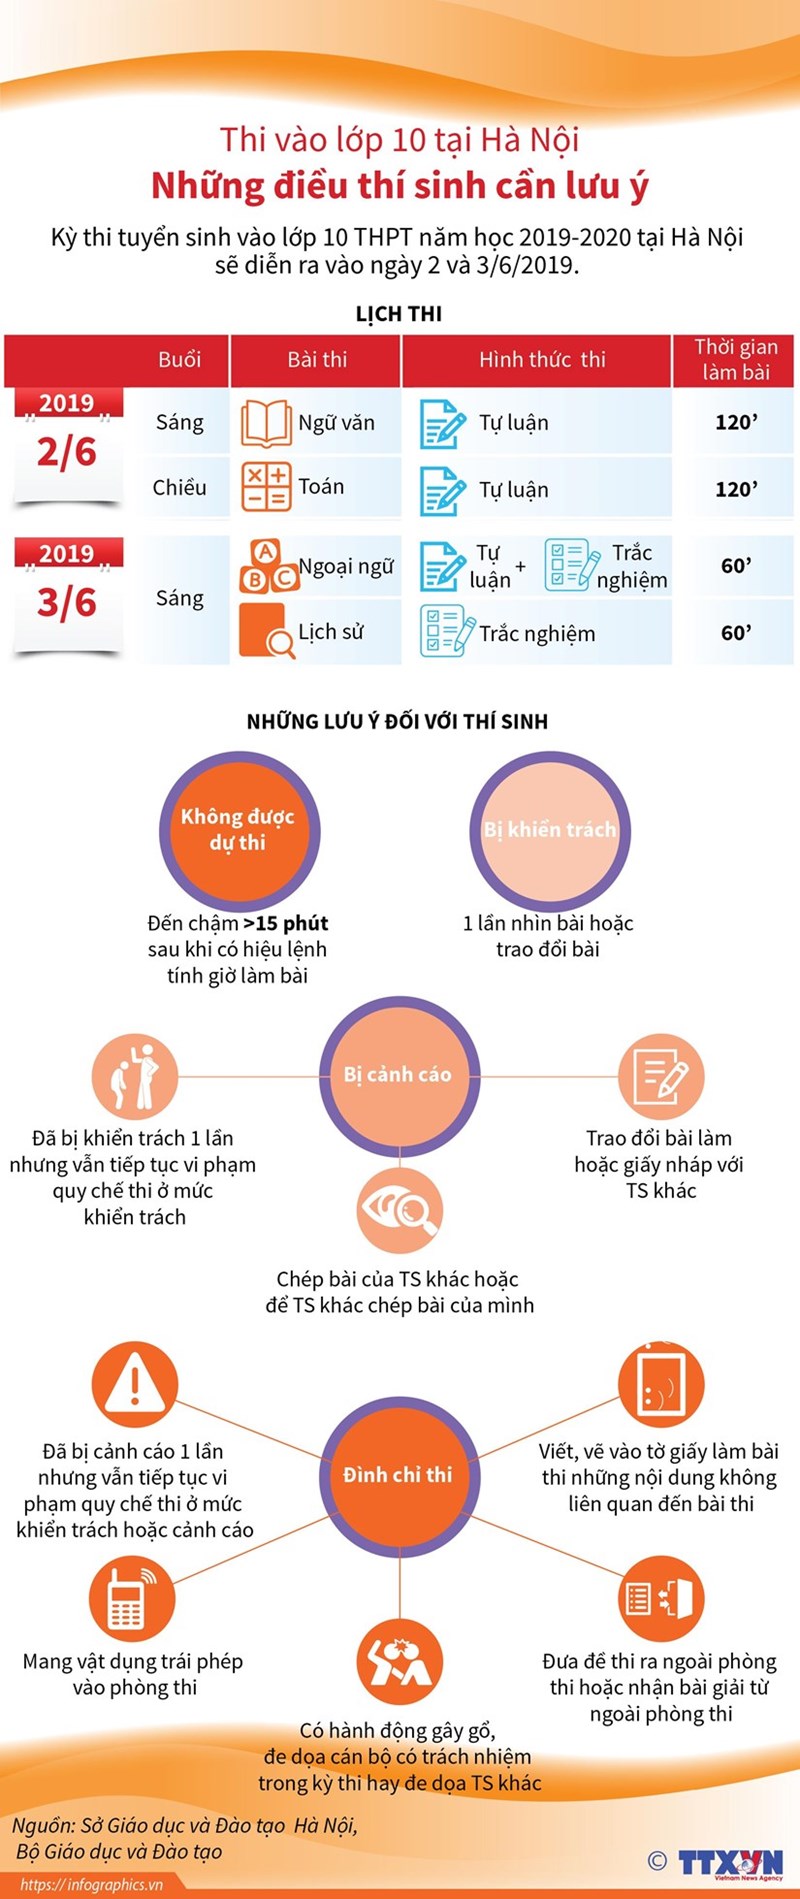 [Infographics] Thi vào lớp 10 tại Hà Nội: Những điều thí sinh cần lưu ý - Ảnh 1